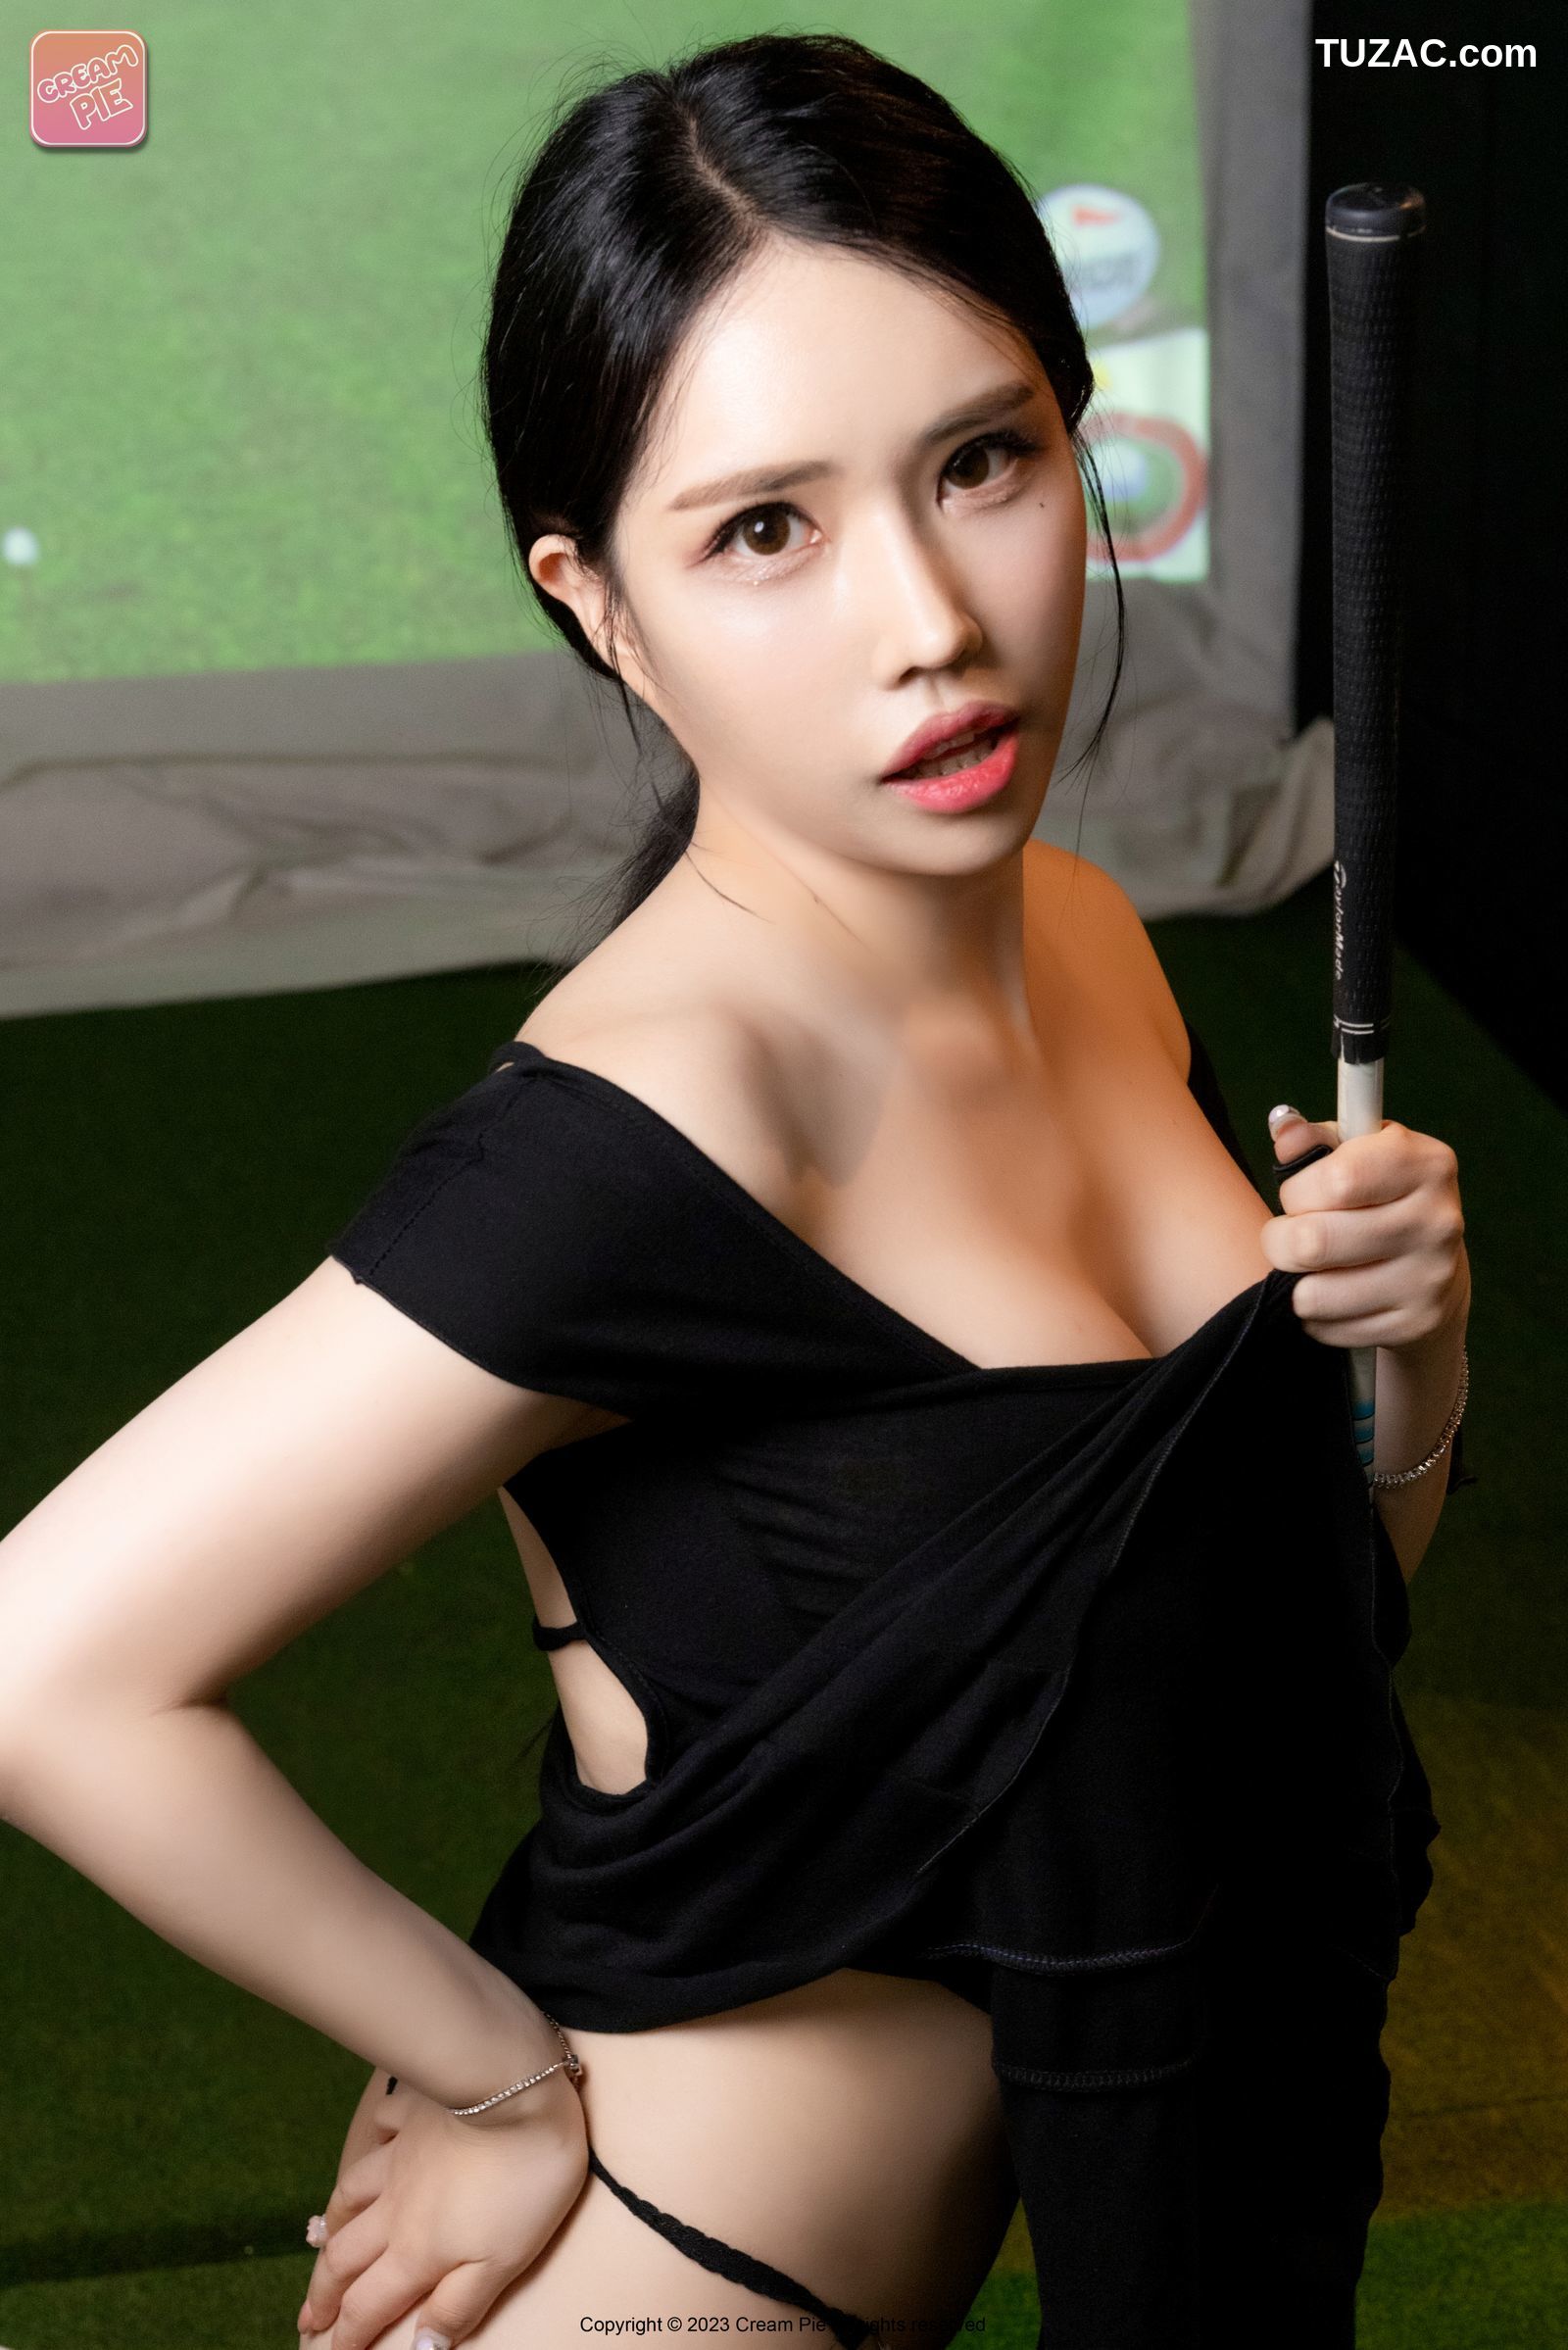 韩国美女-Hani-하니-性感高尔夫-Screen-Golf-无圣光-Cream-pie